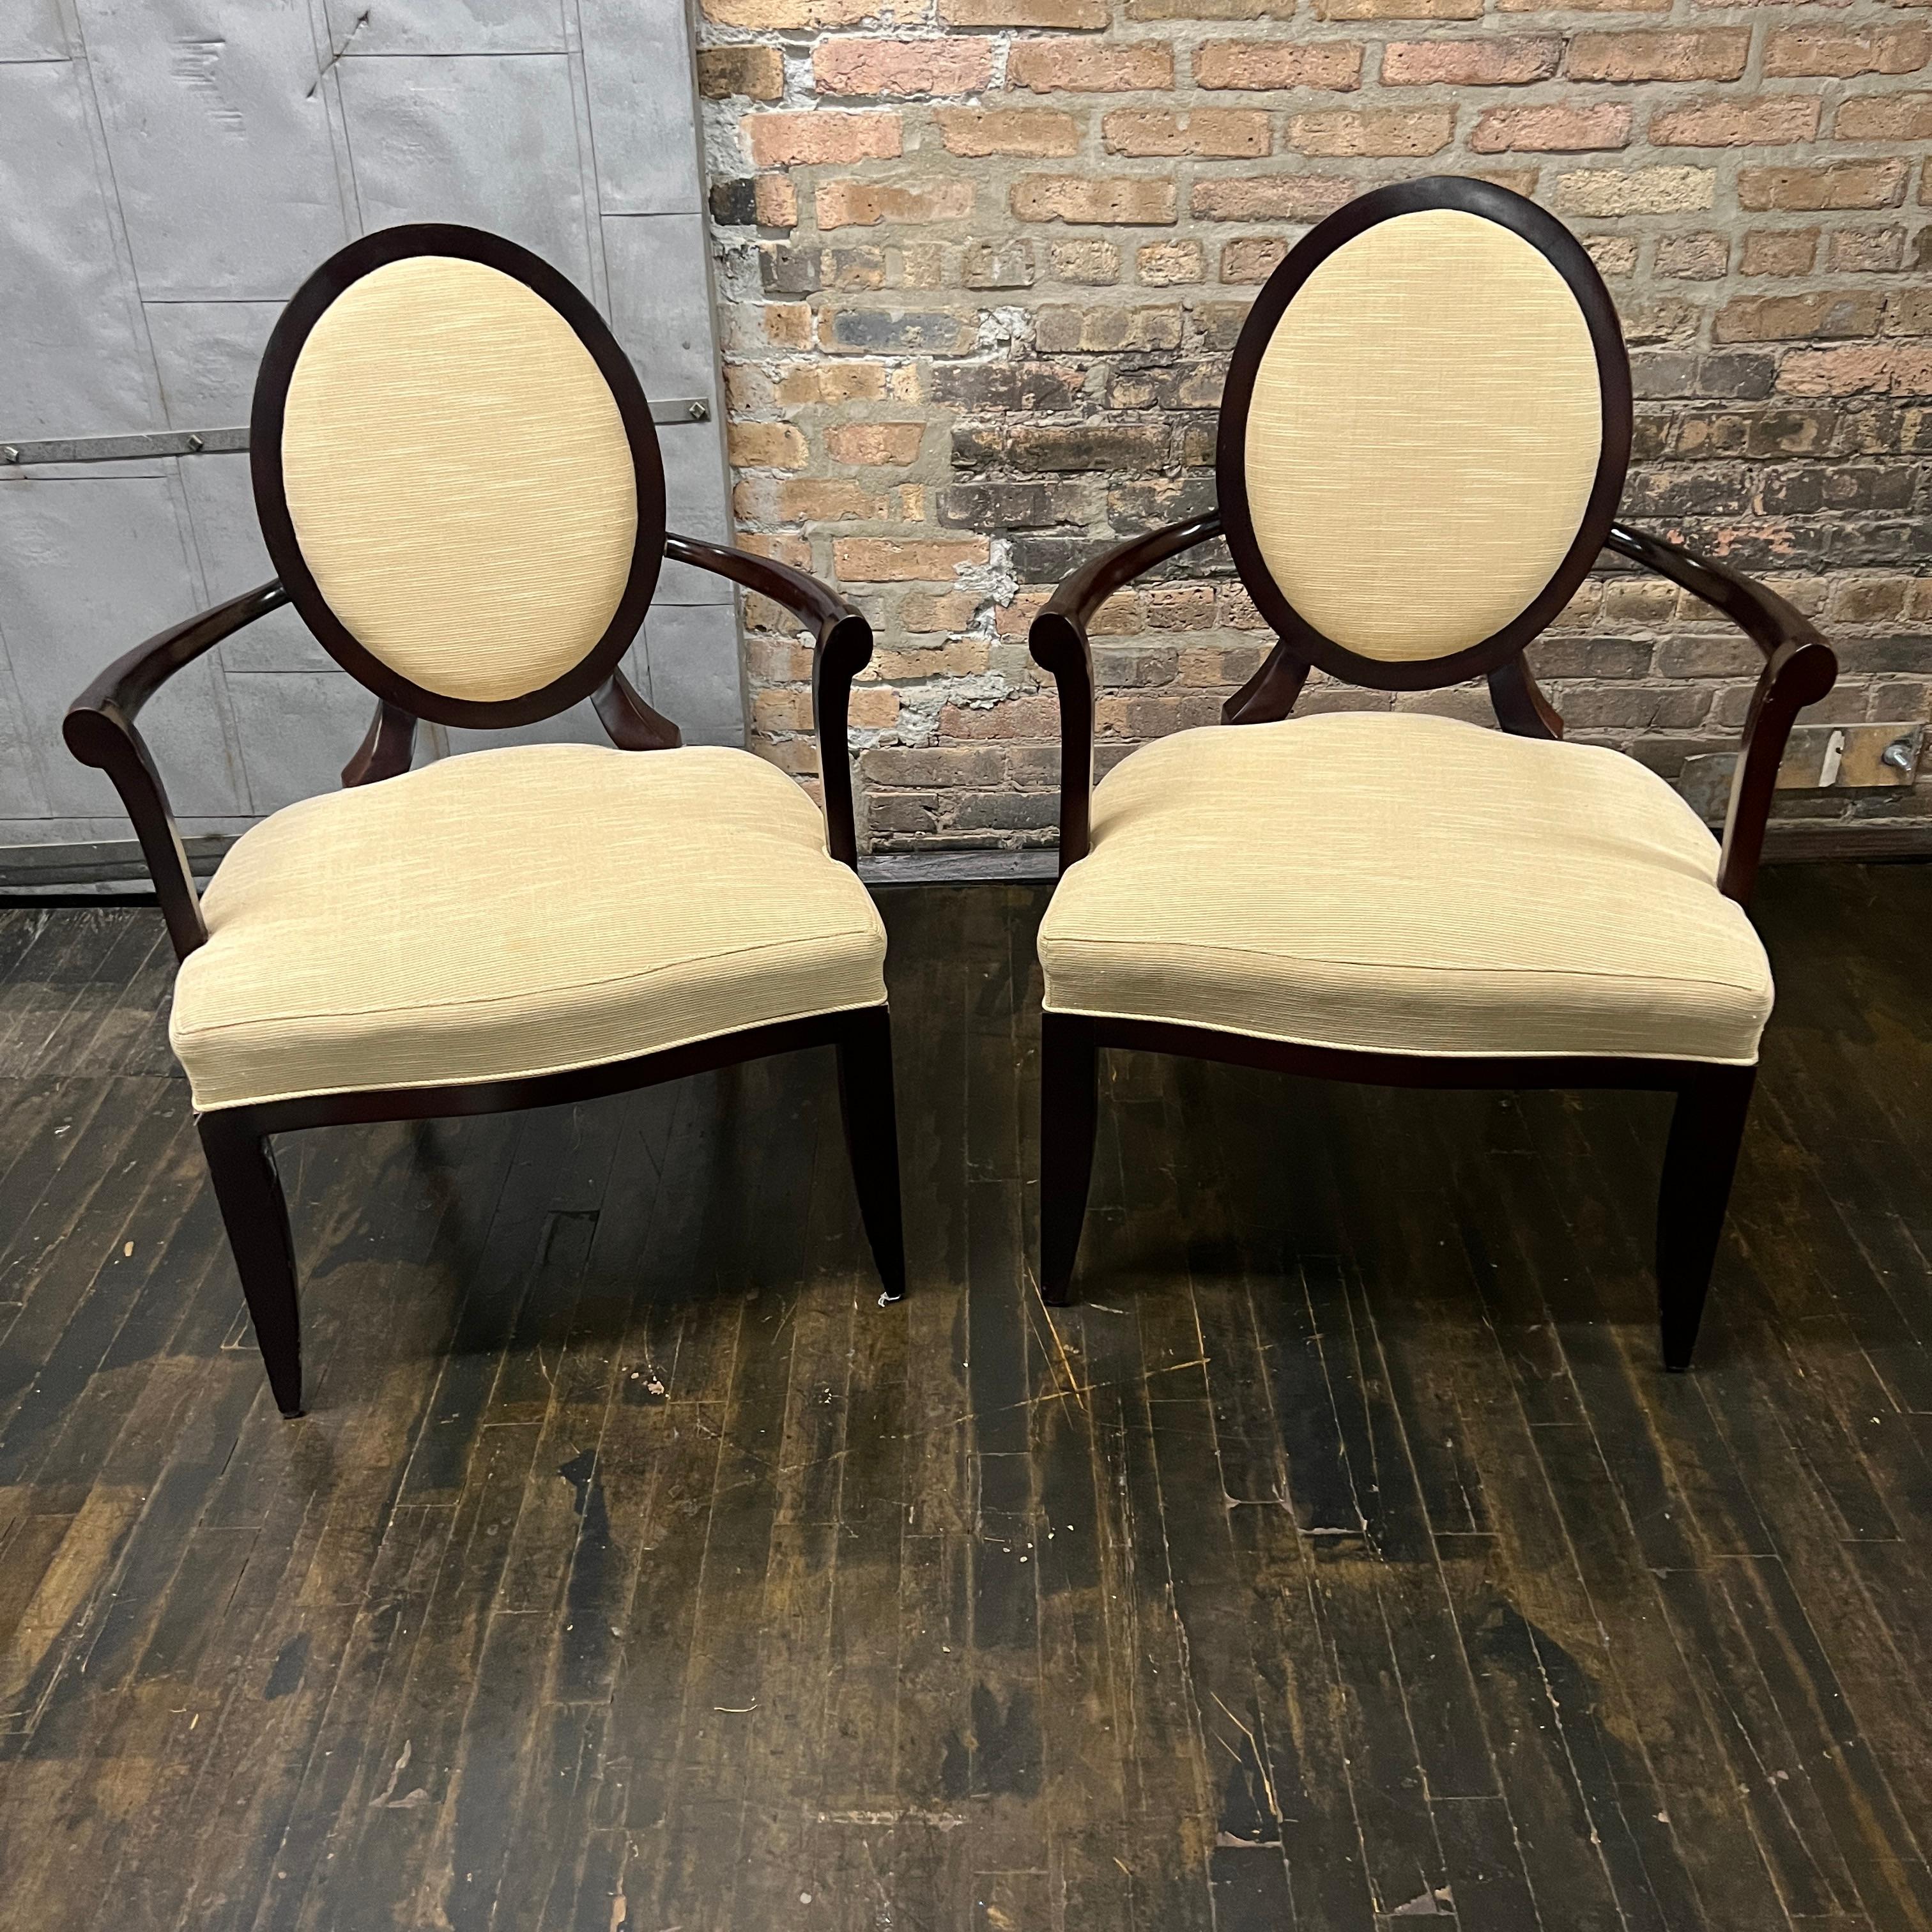 2 Stühle mit X-Rücken und Armlehnen, entworfen von Barbara Barry für Baker.  Diese Stühle werden auch heute noch produziert (und für zwischen 3.000 und 4.000 Dollar pro Stuhl verkauft). Diese Stühle sind sehr solide und von hoher Qualität. 

Die